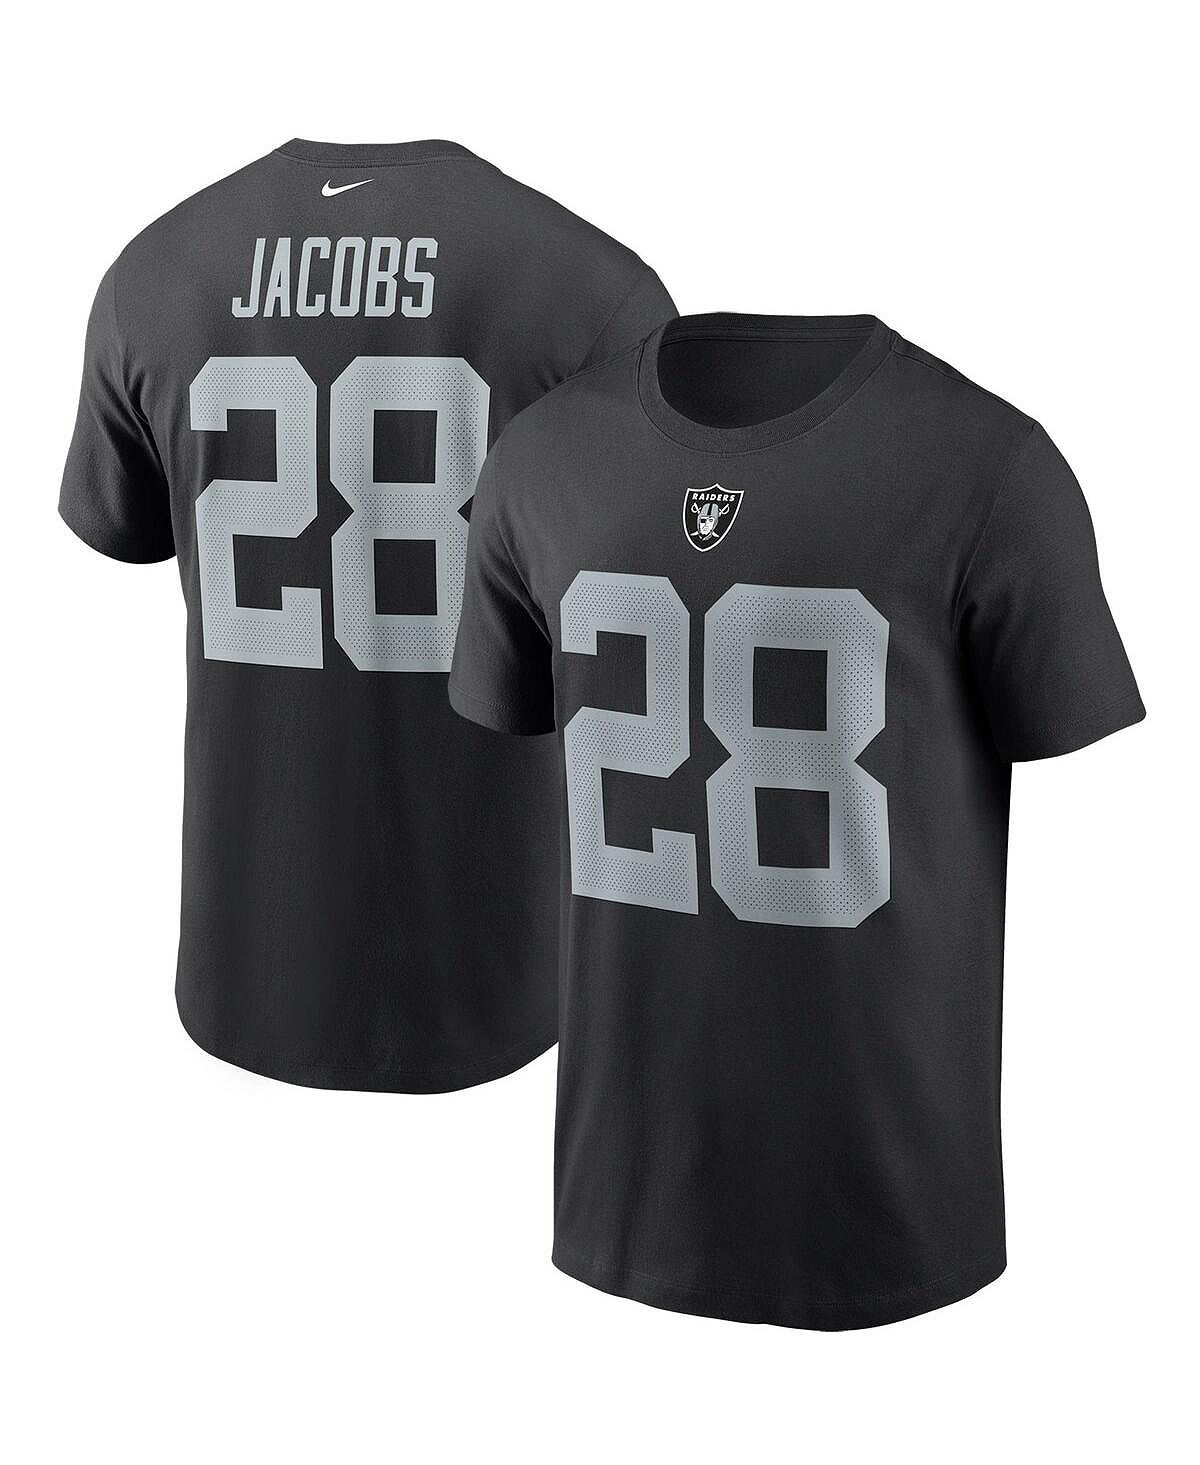 цена Мужская футболка с надписью Las Vegas Raiders Pride, именем и номером Джош Джейкобс Nike